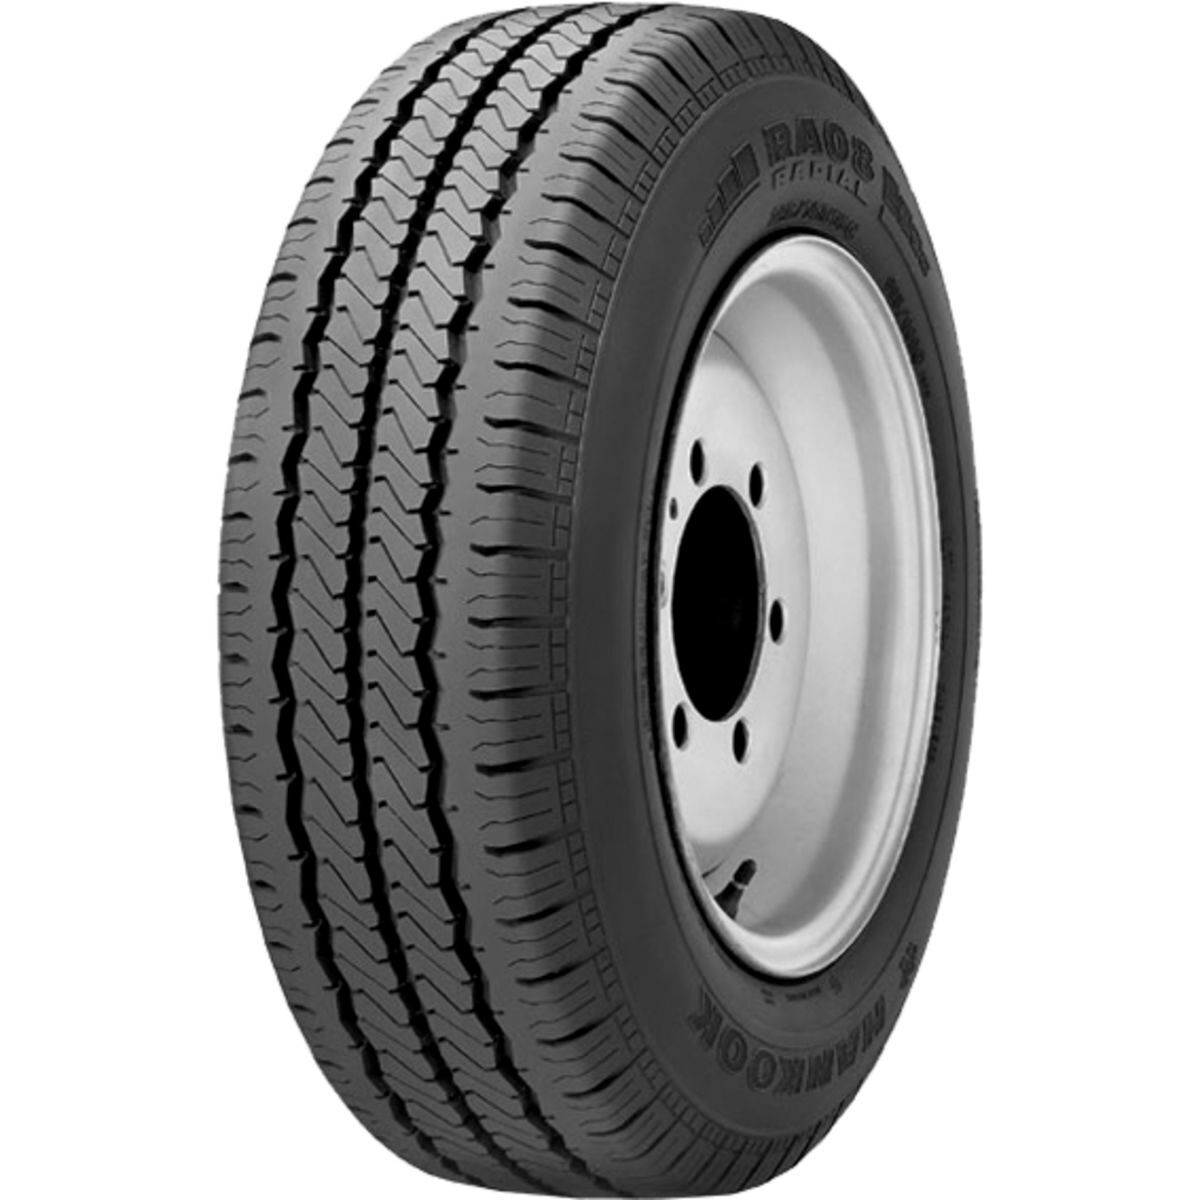 Neumáticos de verano HANKOOK Radial RA08 195/75R14C, 106/104Q TL